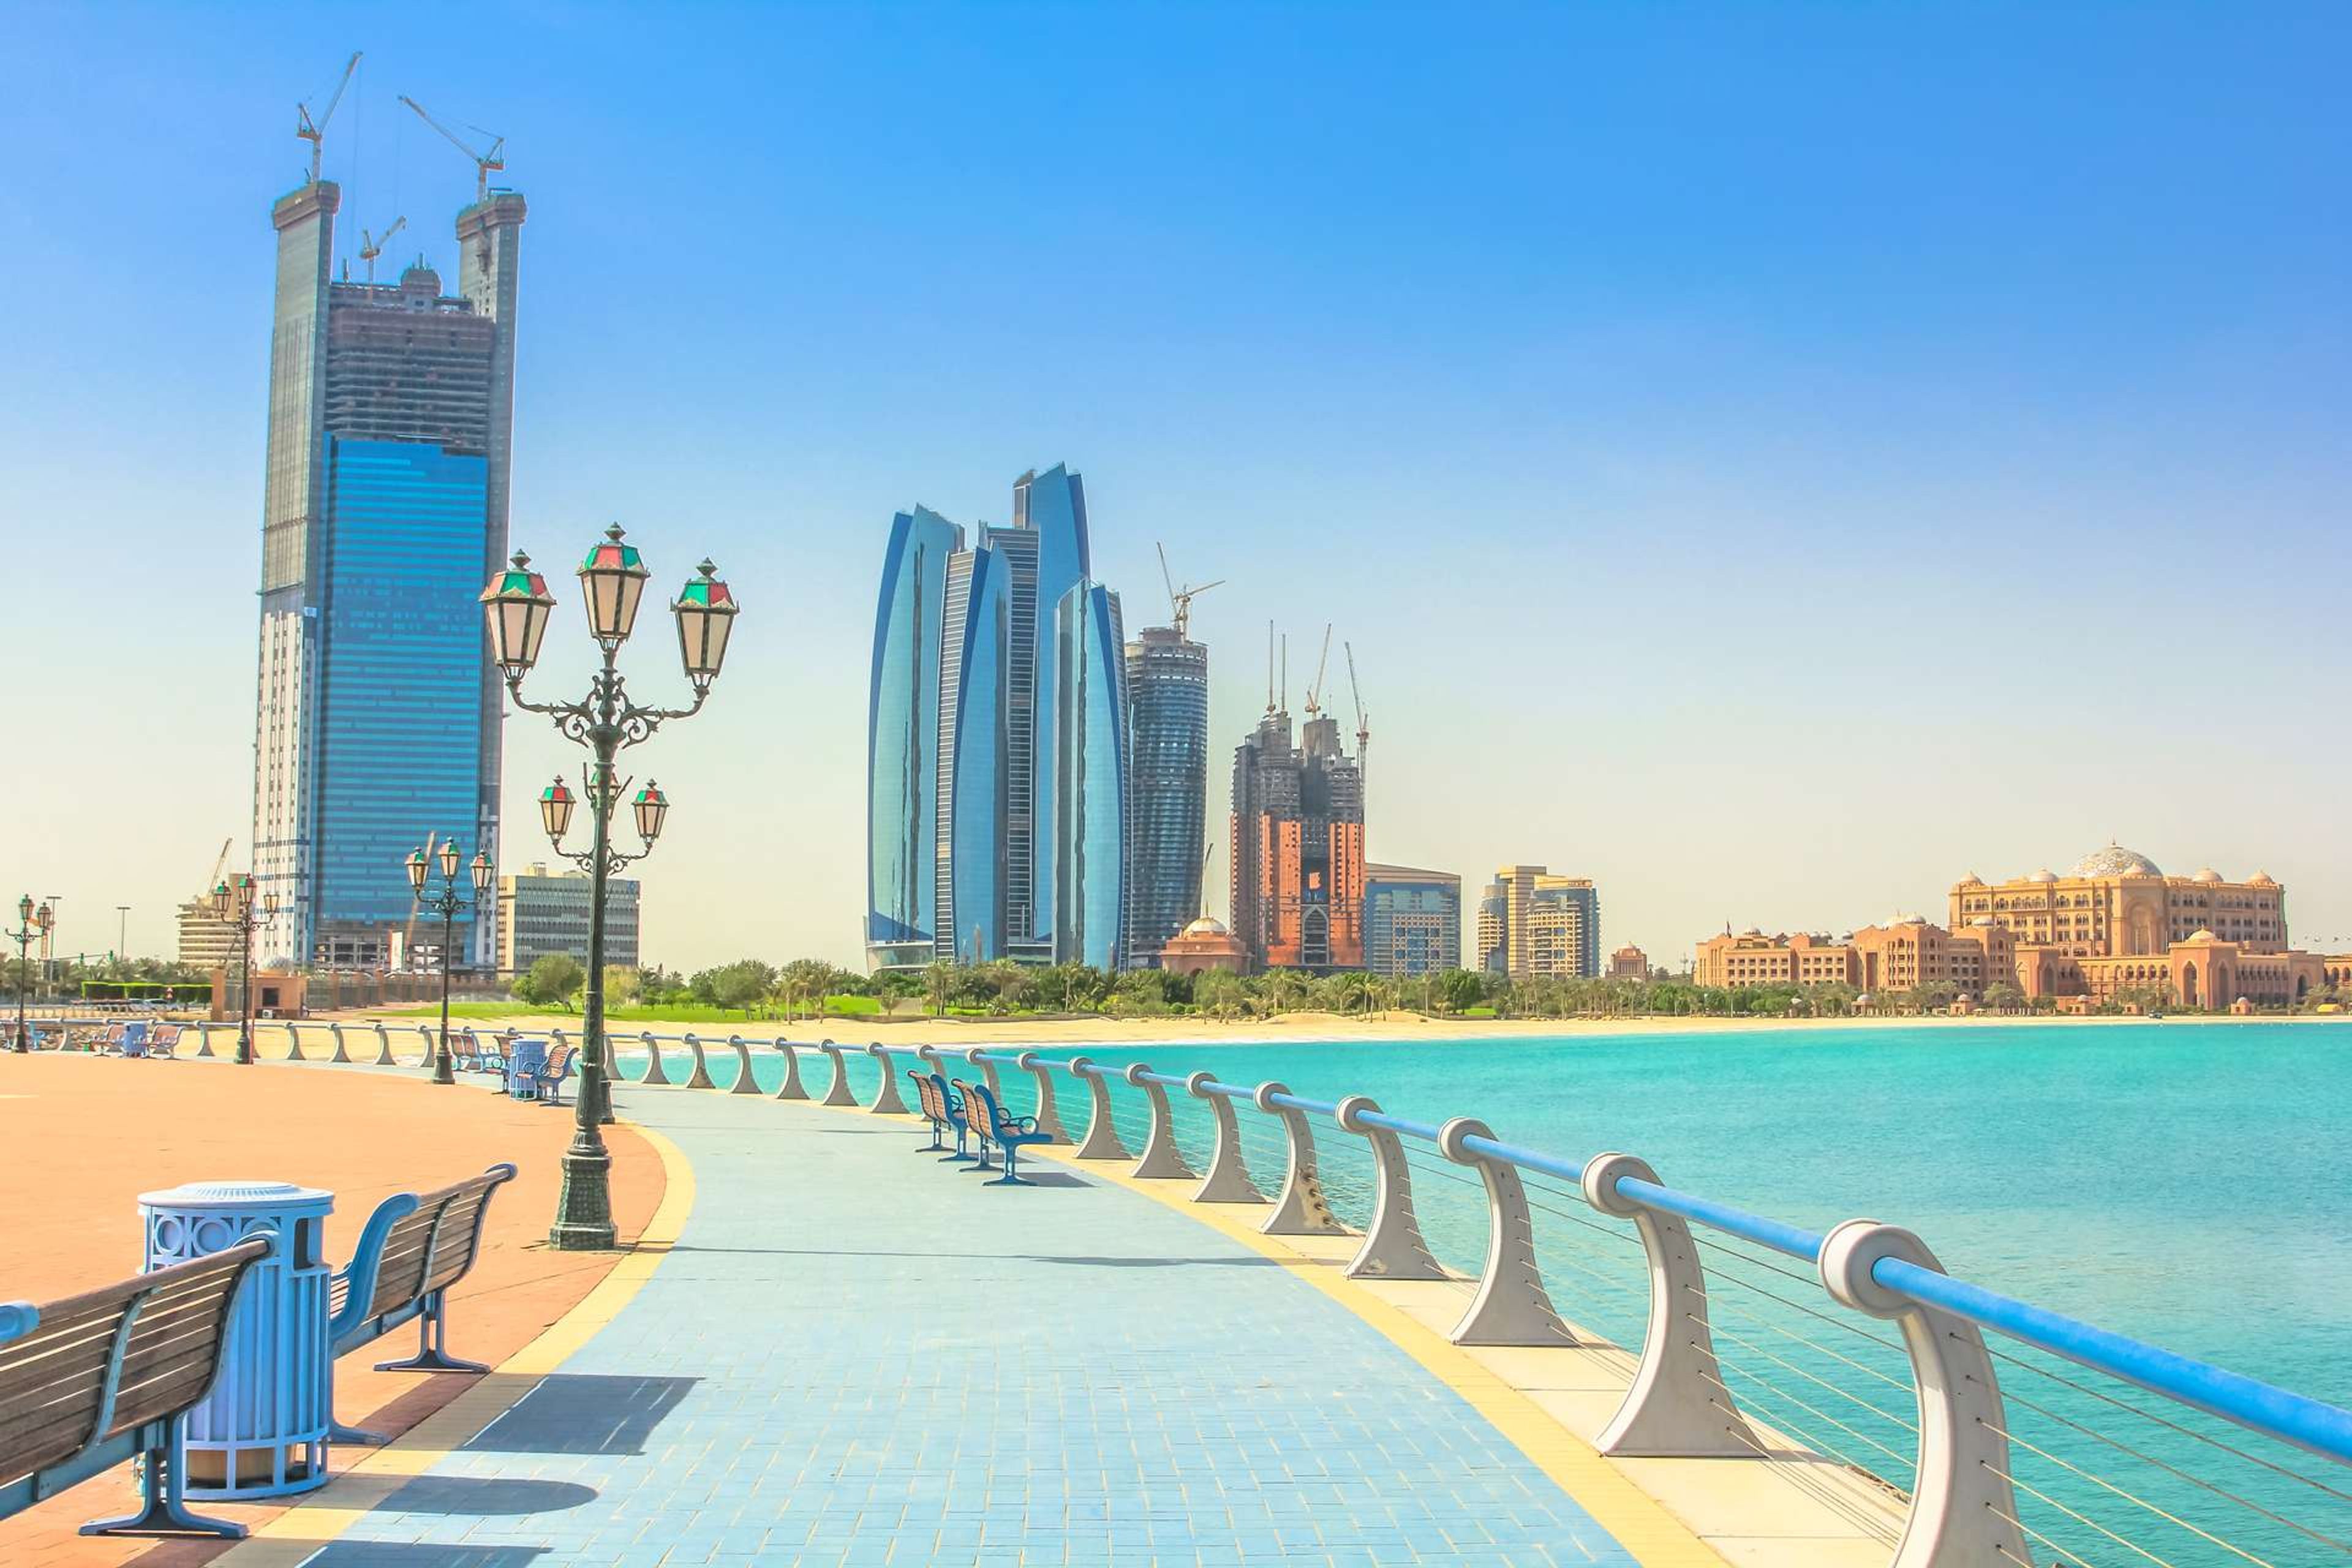 Verenigde Arabische Emiraten Abu Dhabi Dhabi skyline from cycle paths of Corniche